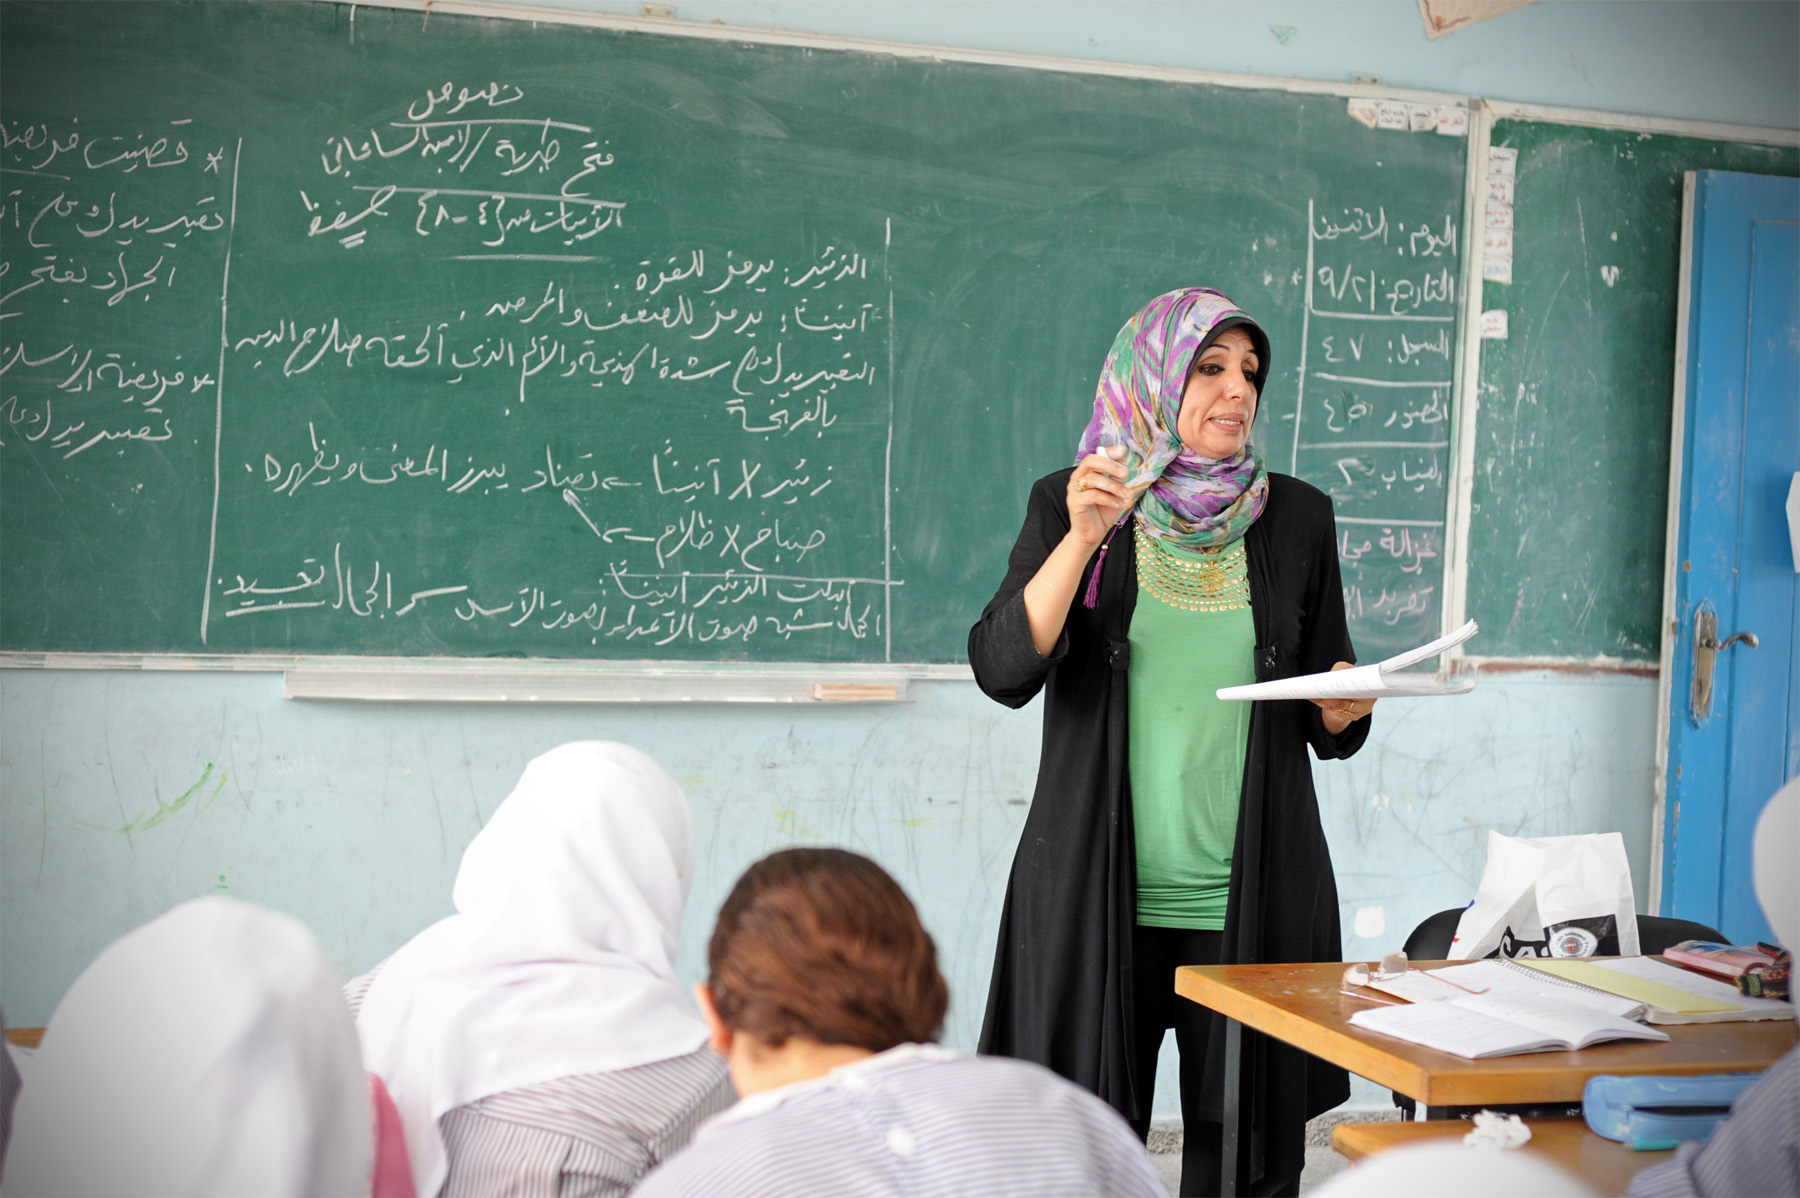 دليل الاغاثة الفلسطيني - اتحاد المعلمين يعلن تعليق الدوام طوال الأسبوع بعد  الحصة الثالثة